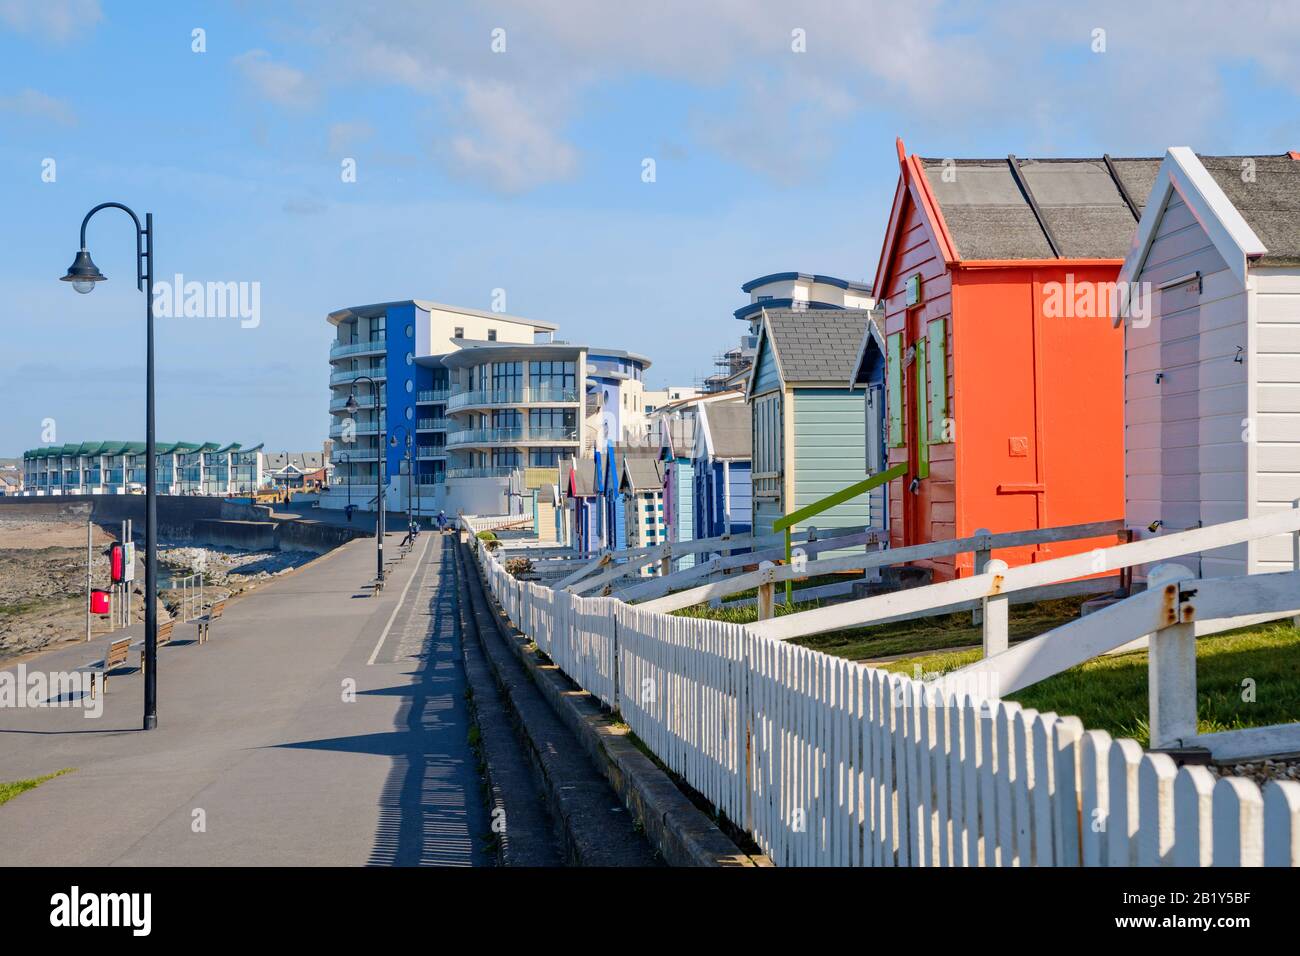 Bunte Strandhütten an der Promenade in Westward Ho!, neben Meer und Strand, Urlaubsziel, Eimer und Spaten Urlaub, Küstenleben, Norden Stockfoto